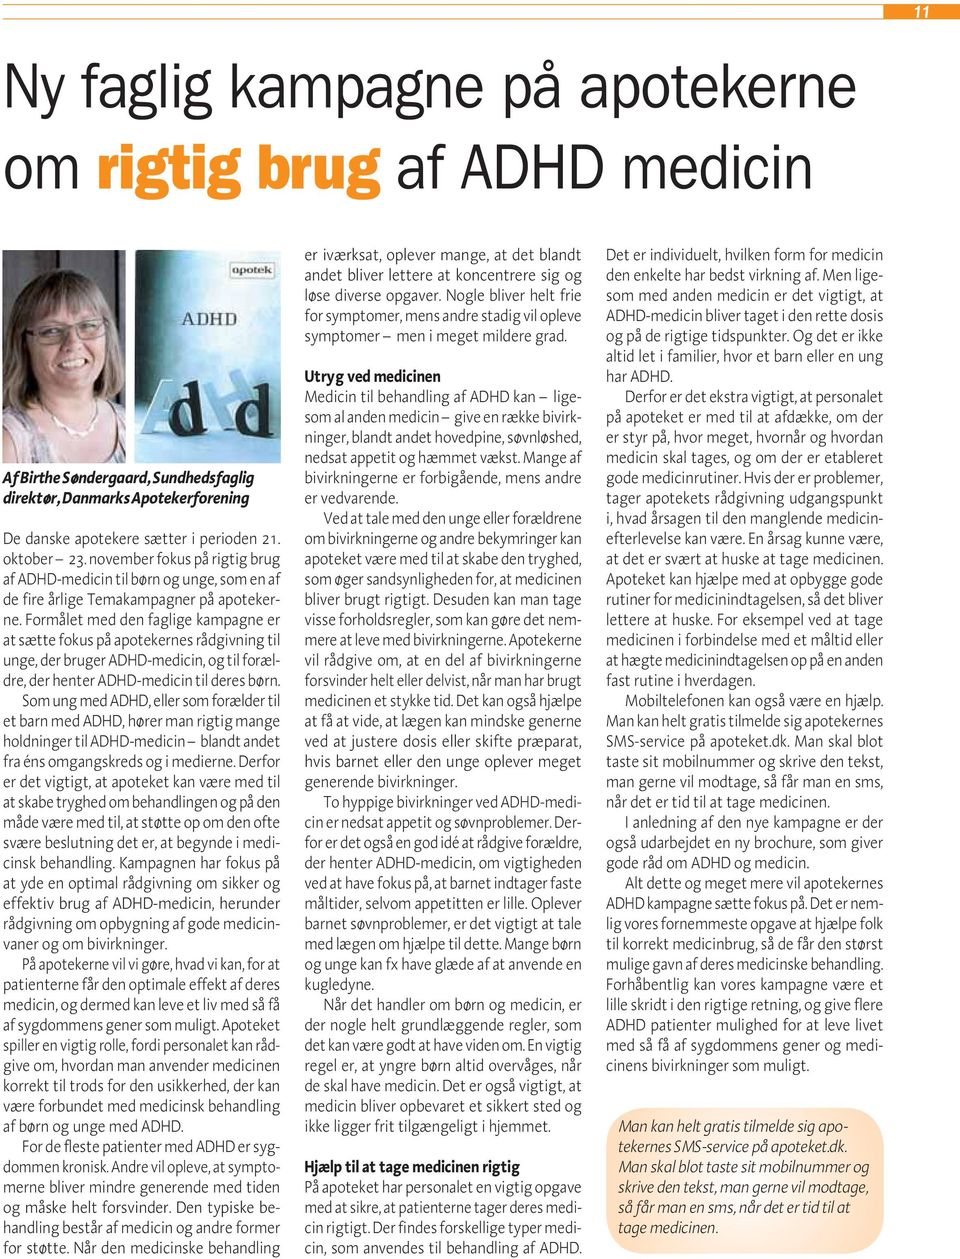 Formålet med den faglige kampagne er at sætte fokus på apotekernes rådgivning til unge, der bruger ADHD-medicin, og til forældre, der henter ADHD-medicin til deres børn.